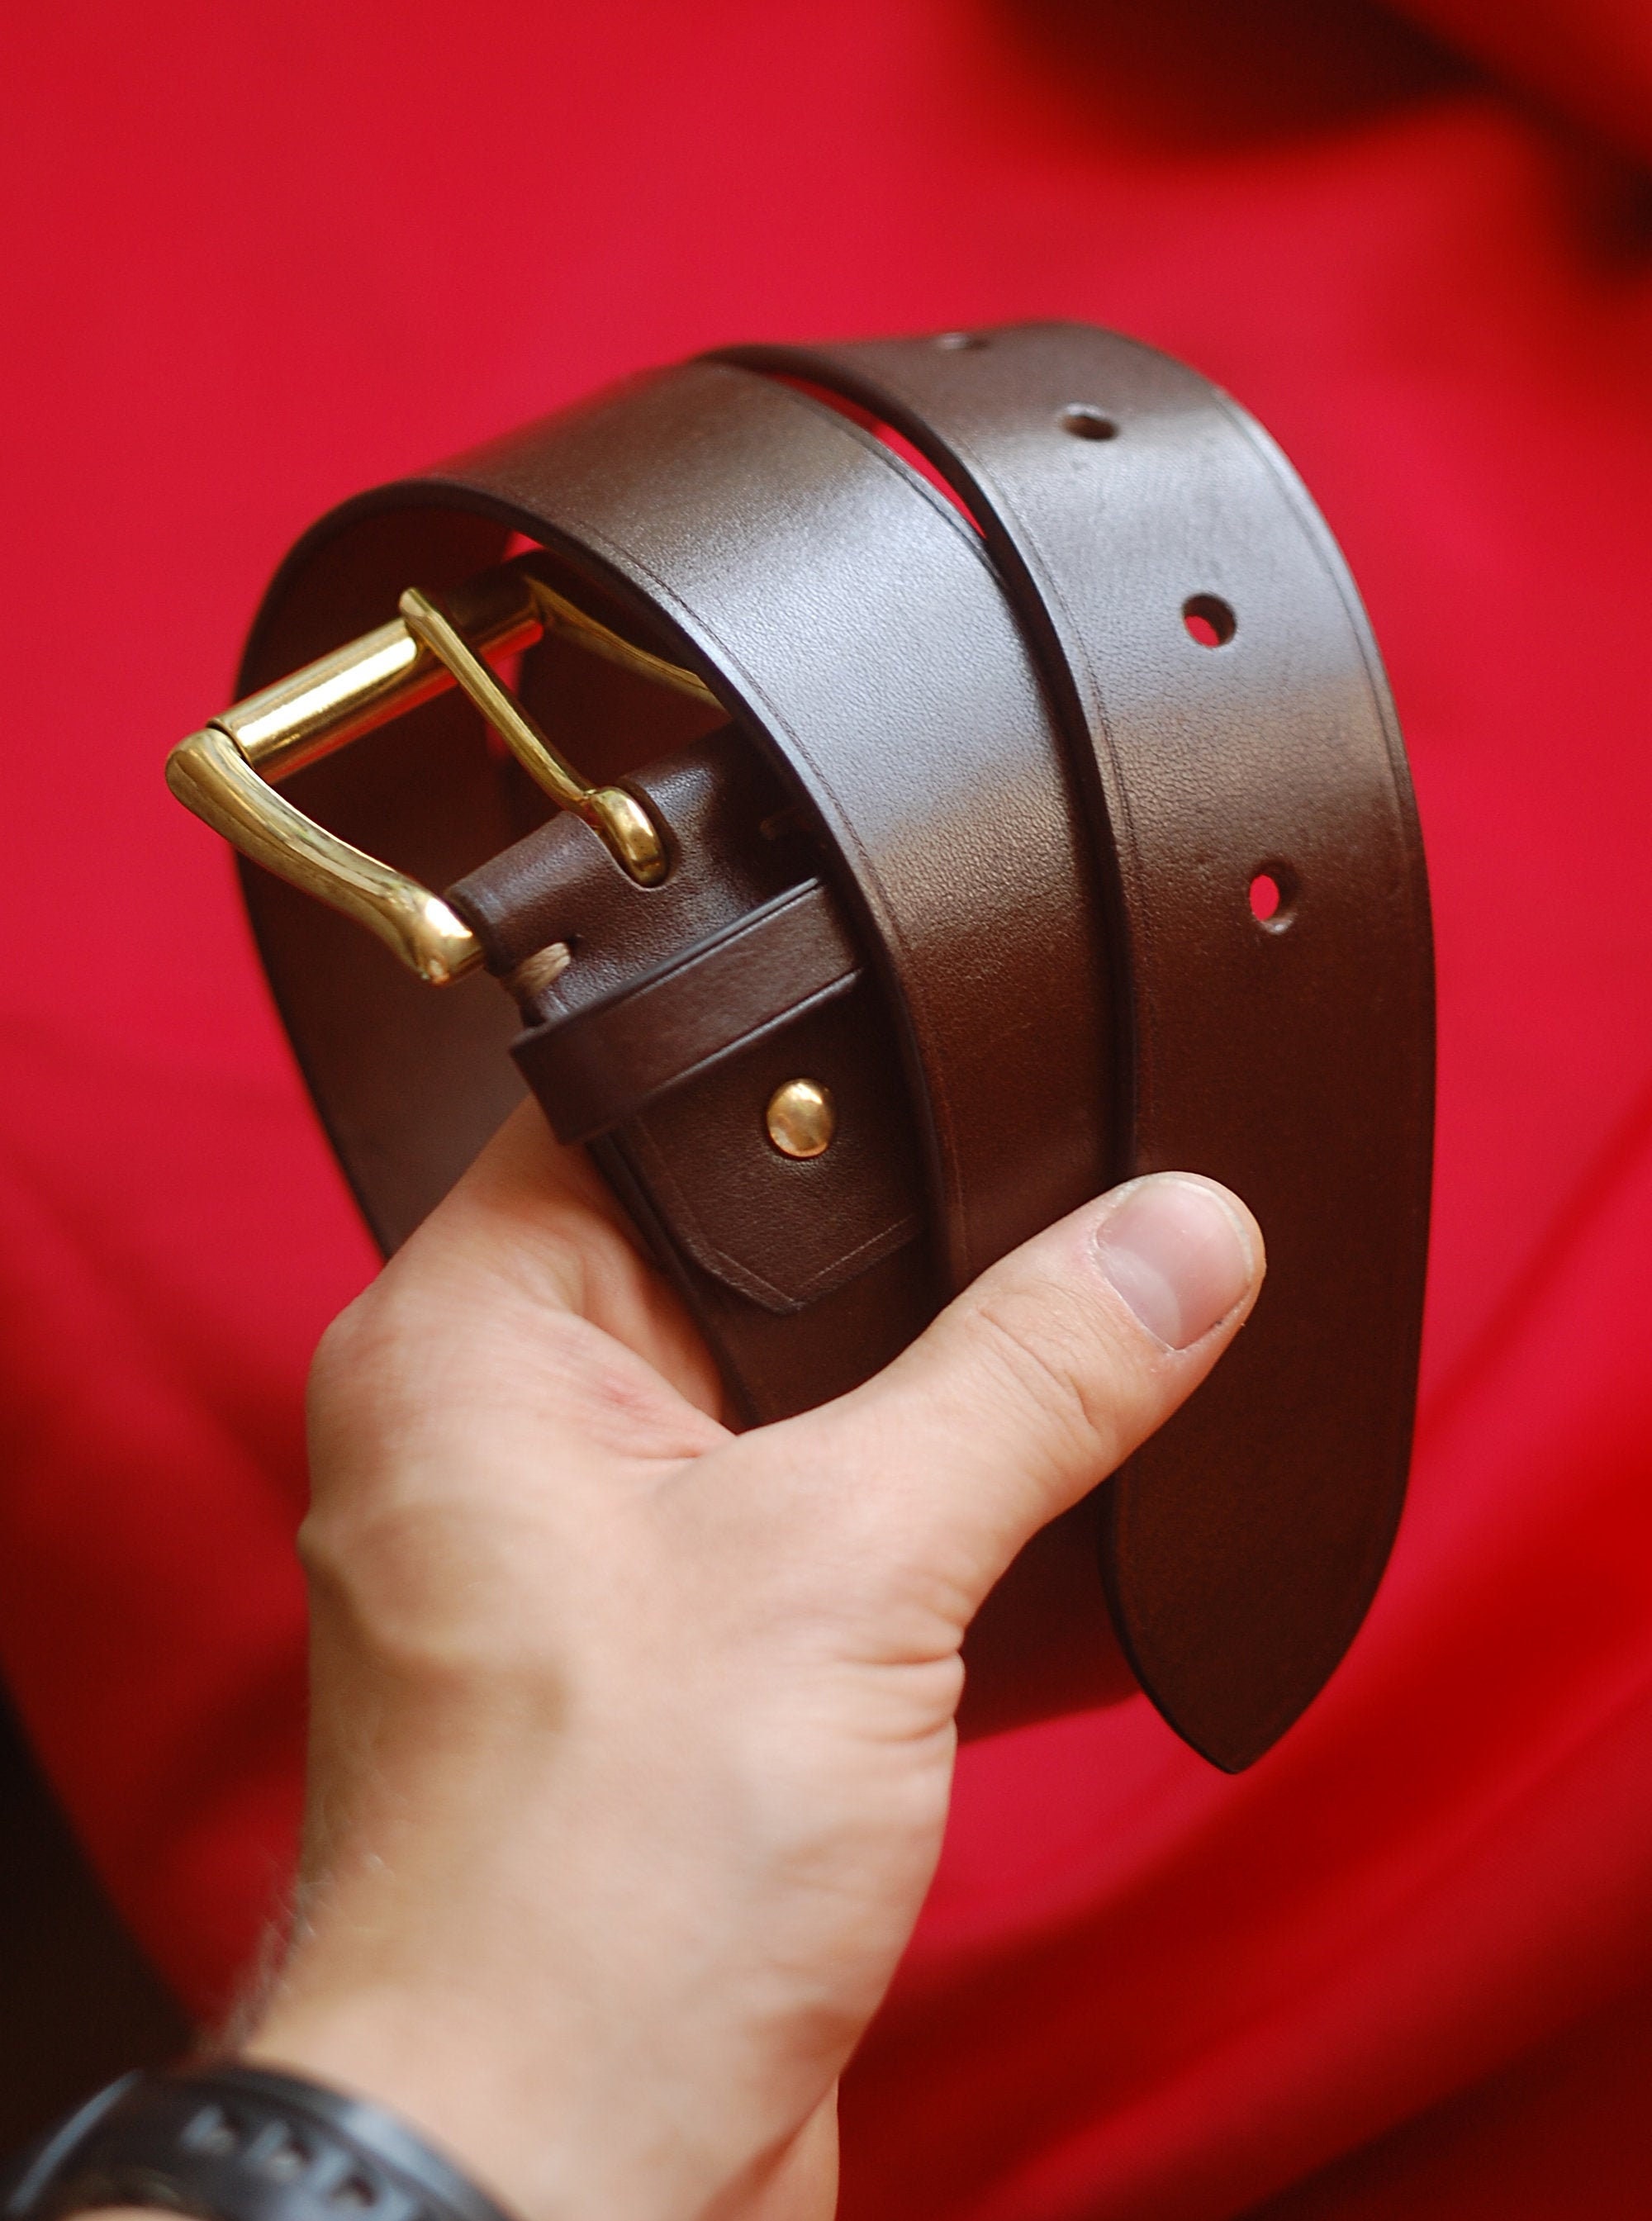 Dark brown leather belt with brass buckle app. 135cm, 22,99 €